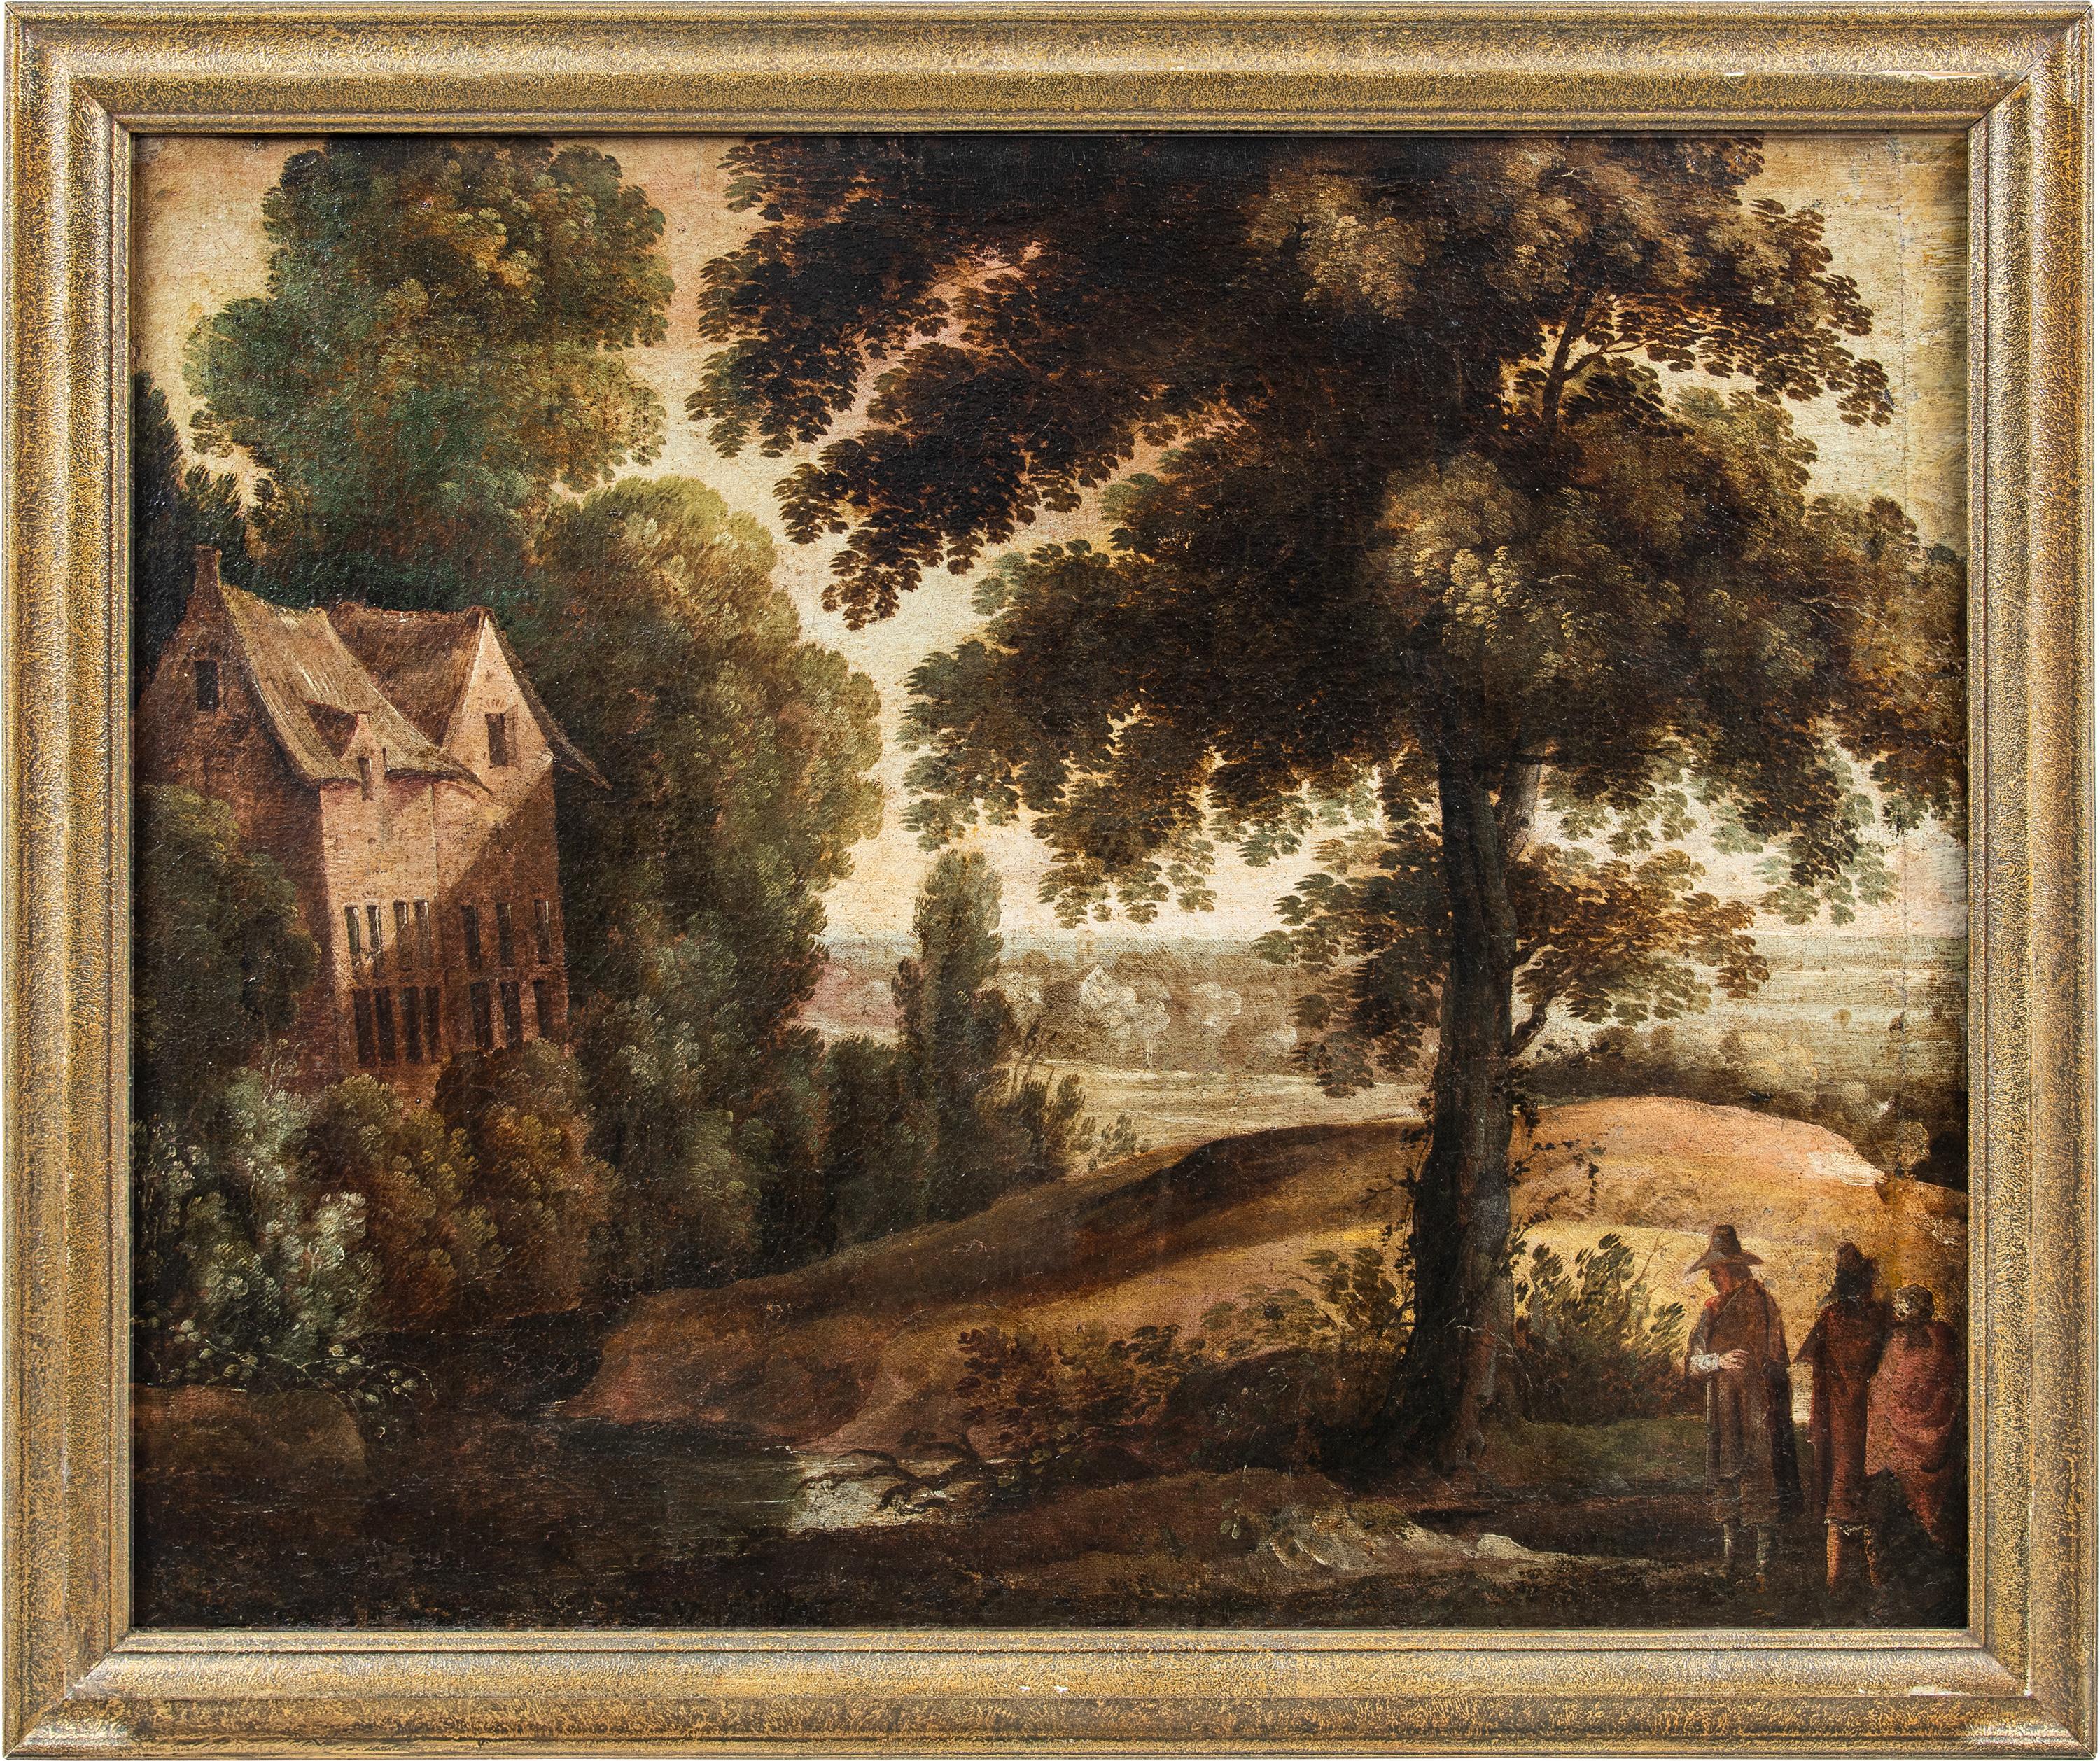 Landscape Painting Unknown - Peintre flamand baroque - peinture de paysage du 17e siècle - Paul Bril